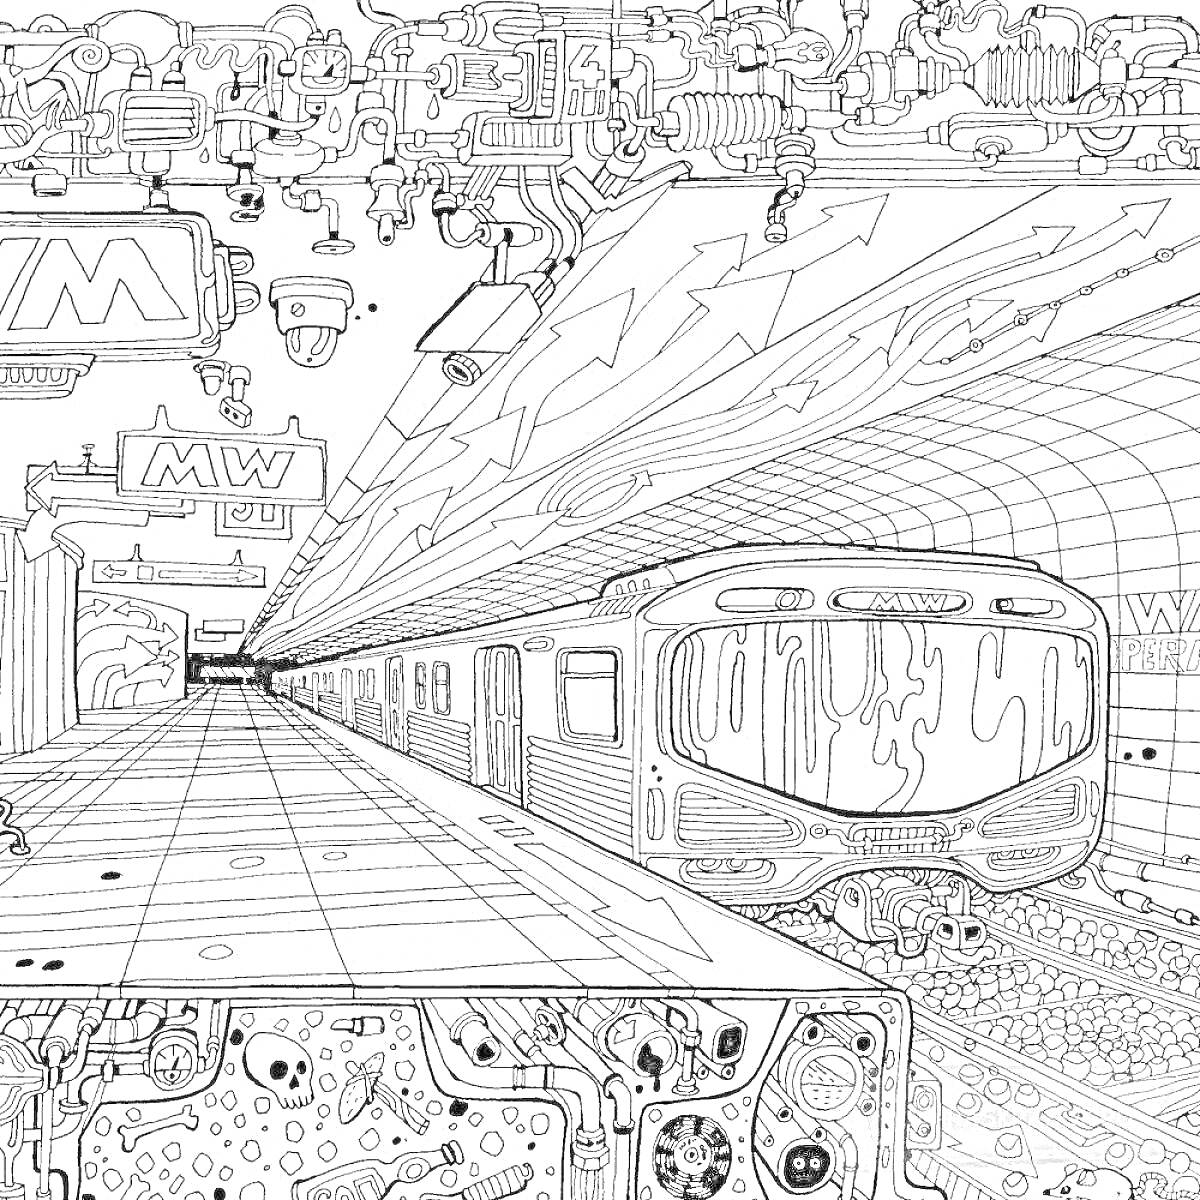 Метро поезд приближается к платформе, элементы: поезд, платформа, туннель, трубы, арки, вывеска 